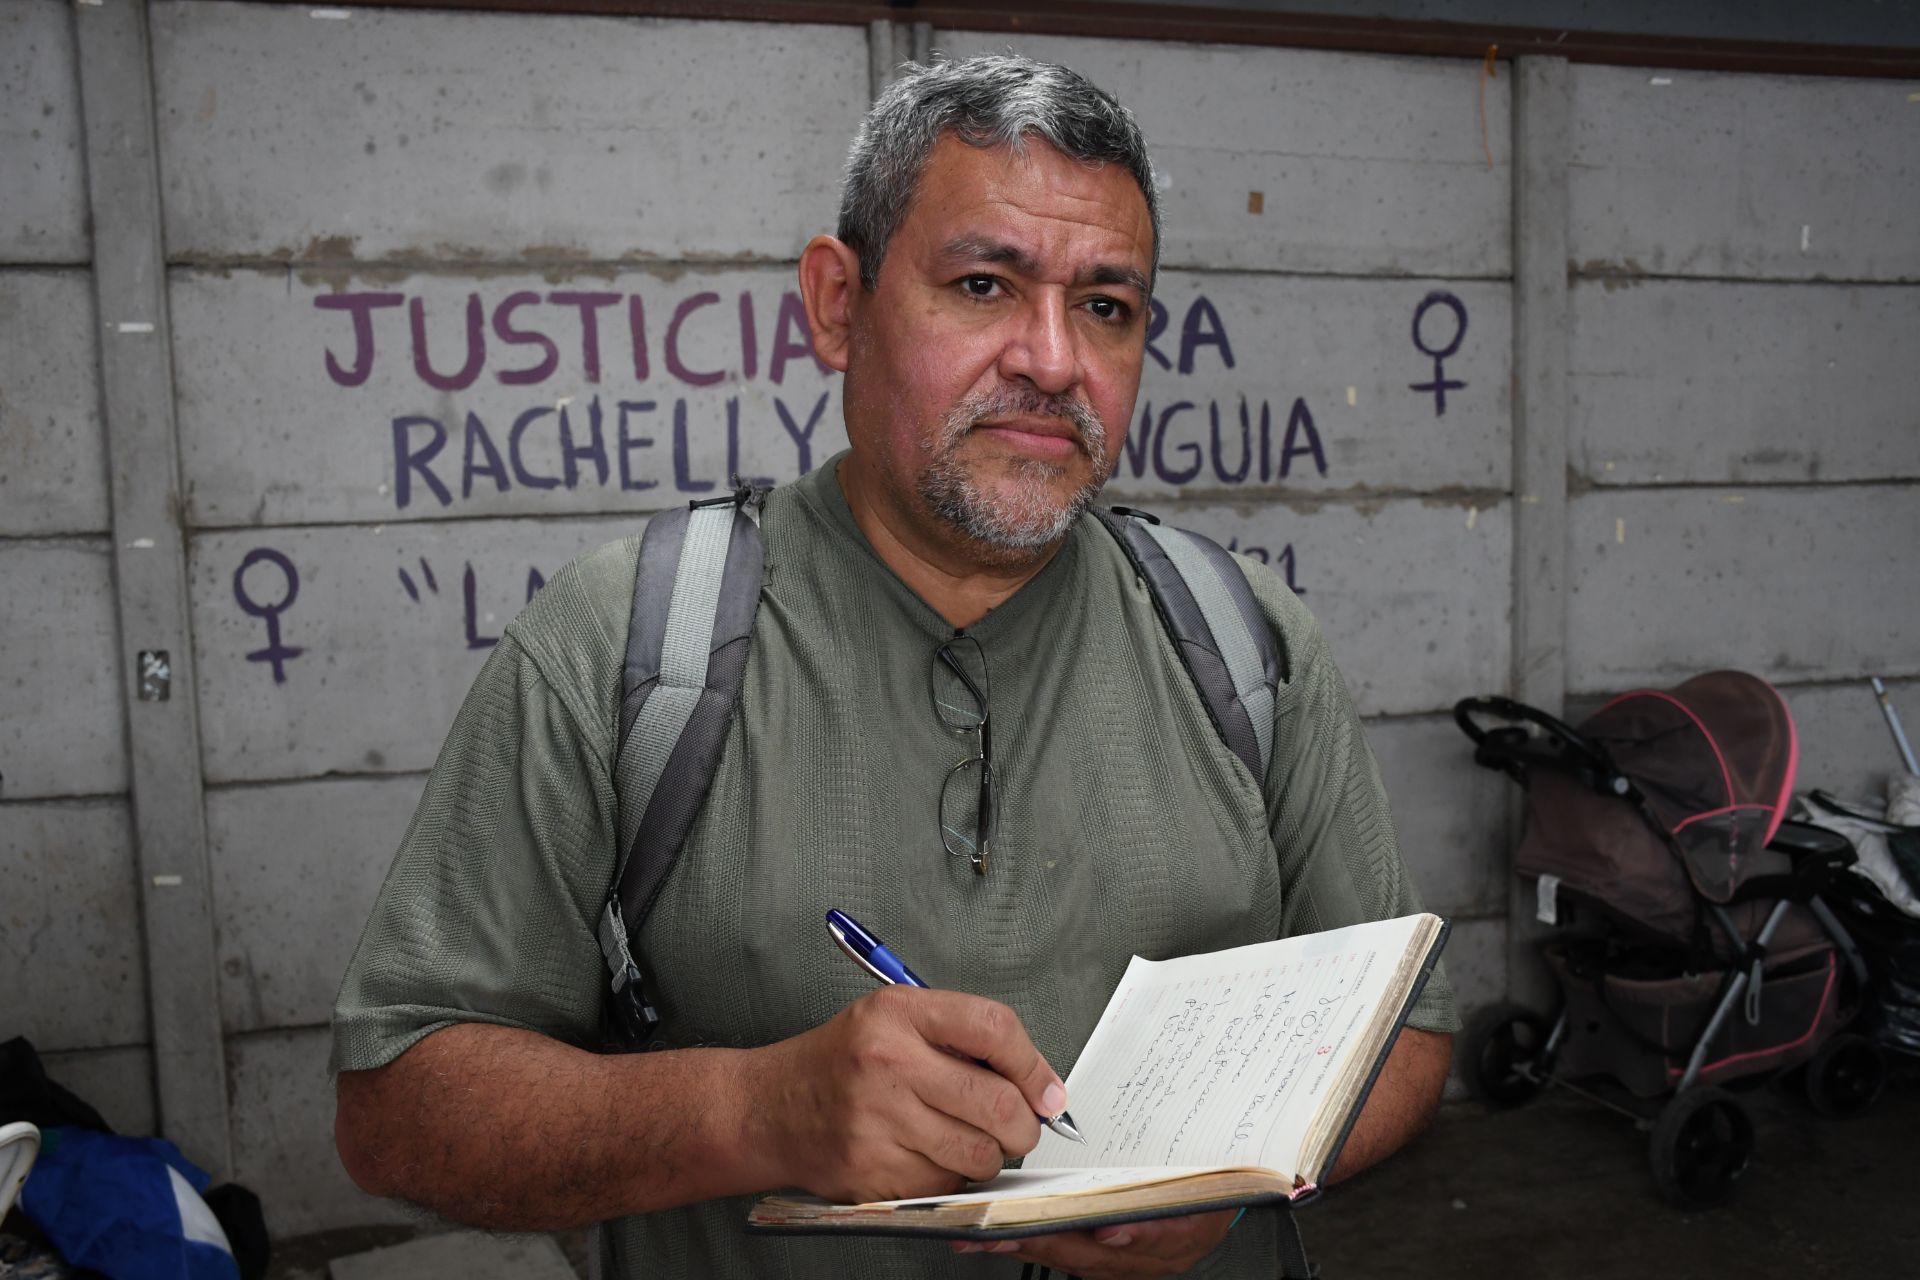 “La segunda cosa que más deseo es poder volver a Nicaragua”
Javier Iván Olivares
Acoso Judicial por ser periodista